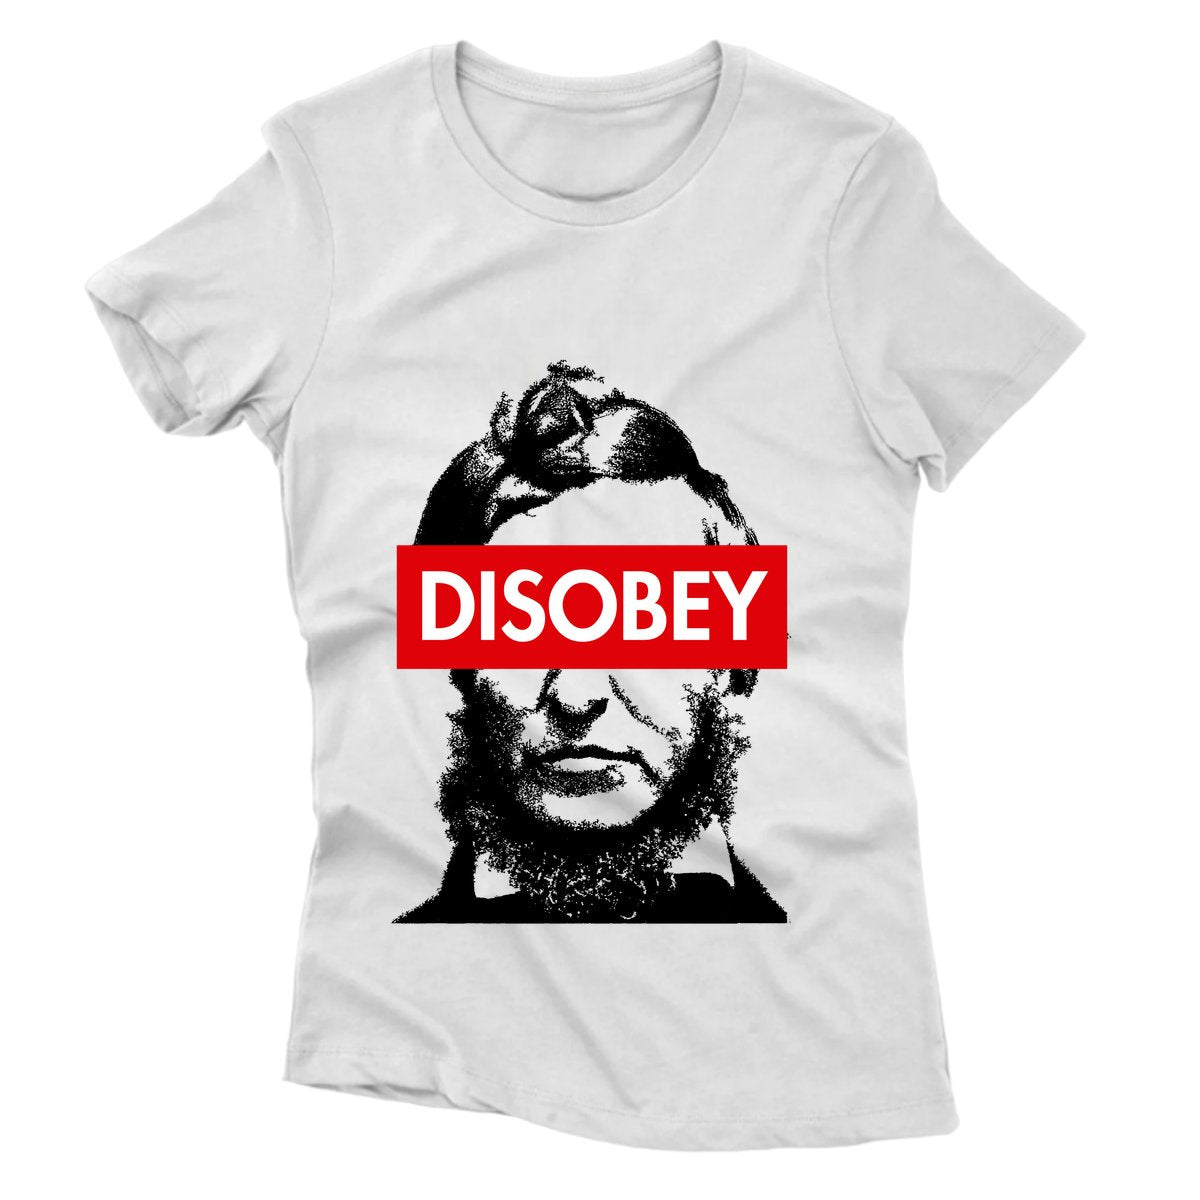 Camiseta - Thoreau - Disobey